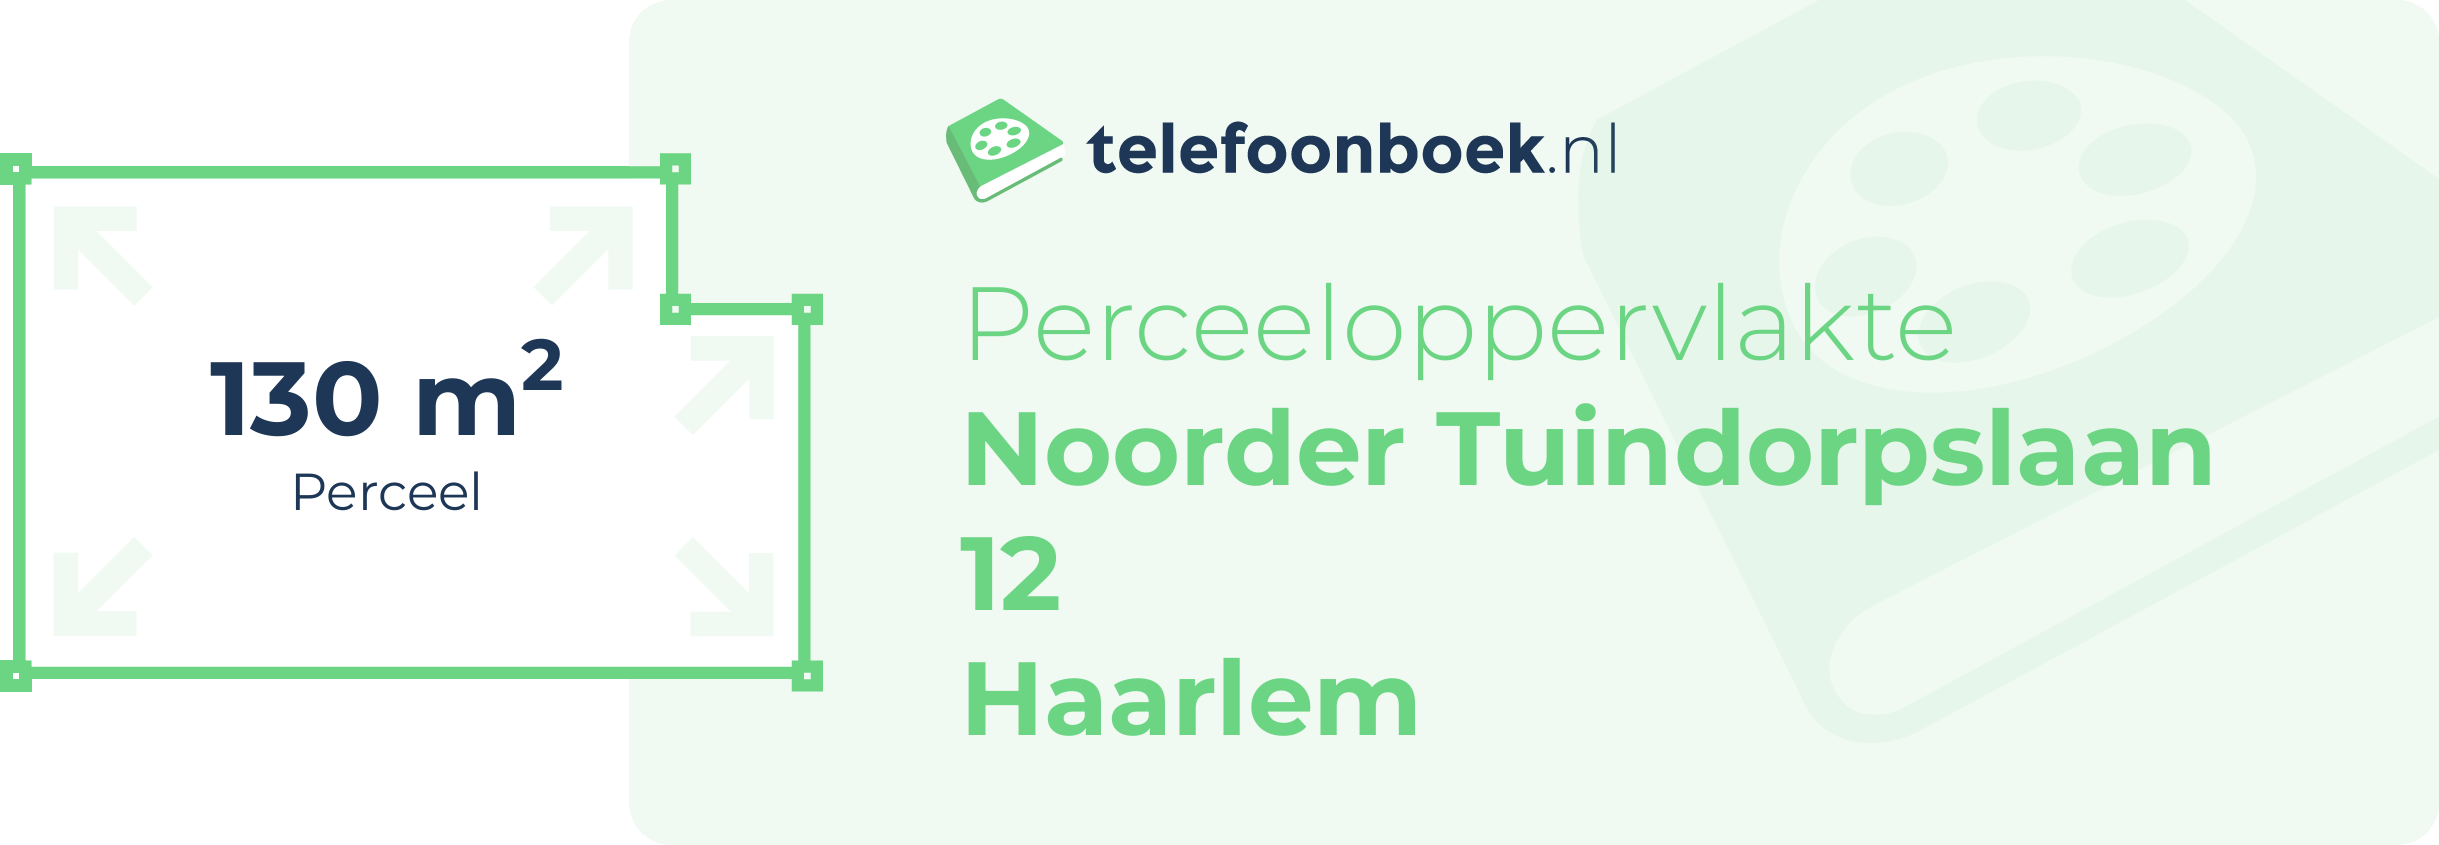 Perceeloppervlakte Noorder Tuindorpslaan 12 Haarlem